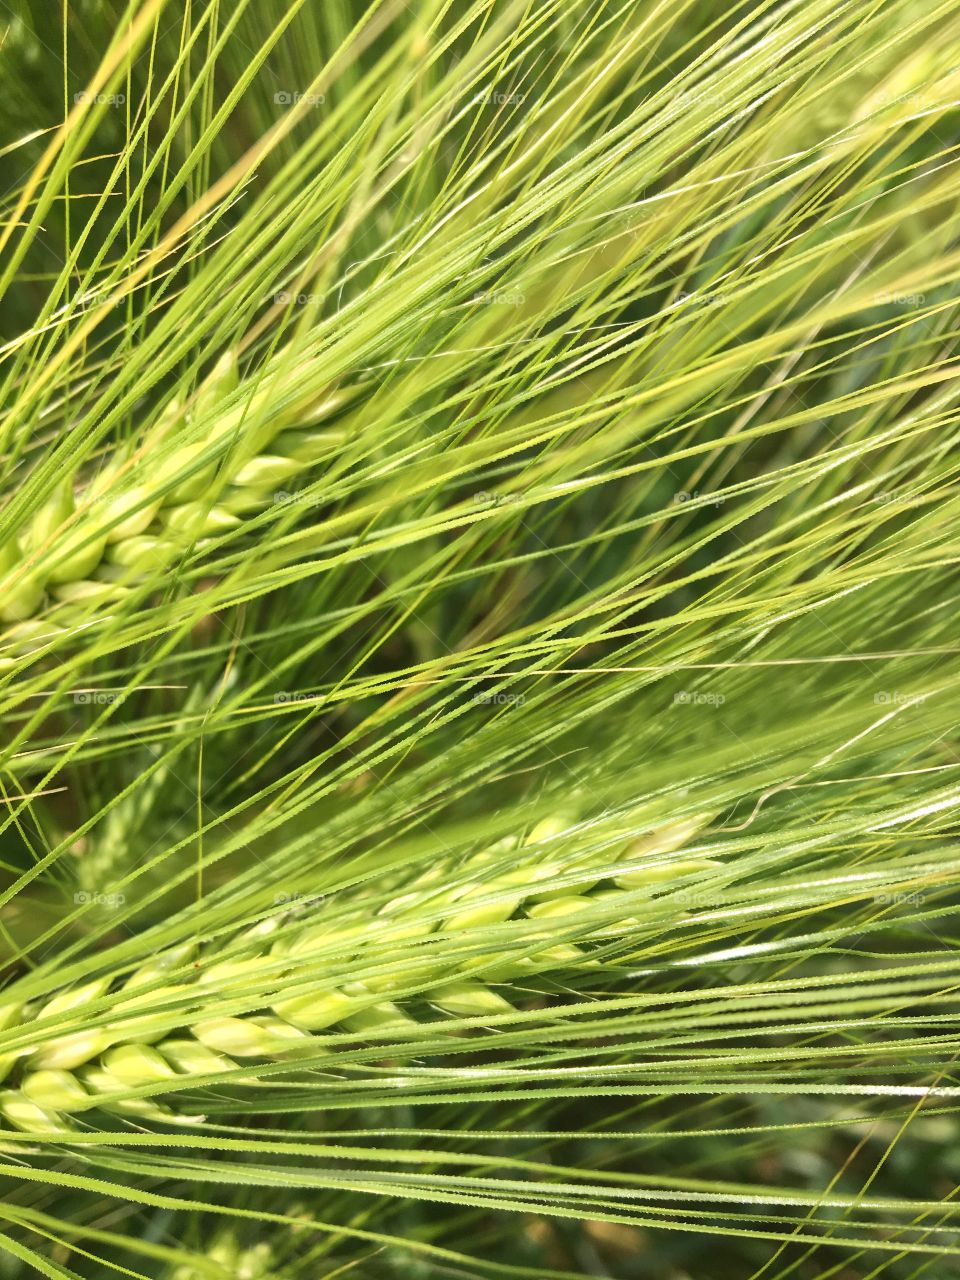 Wheat growing in field